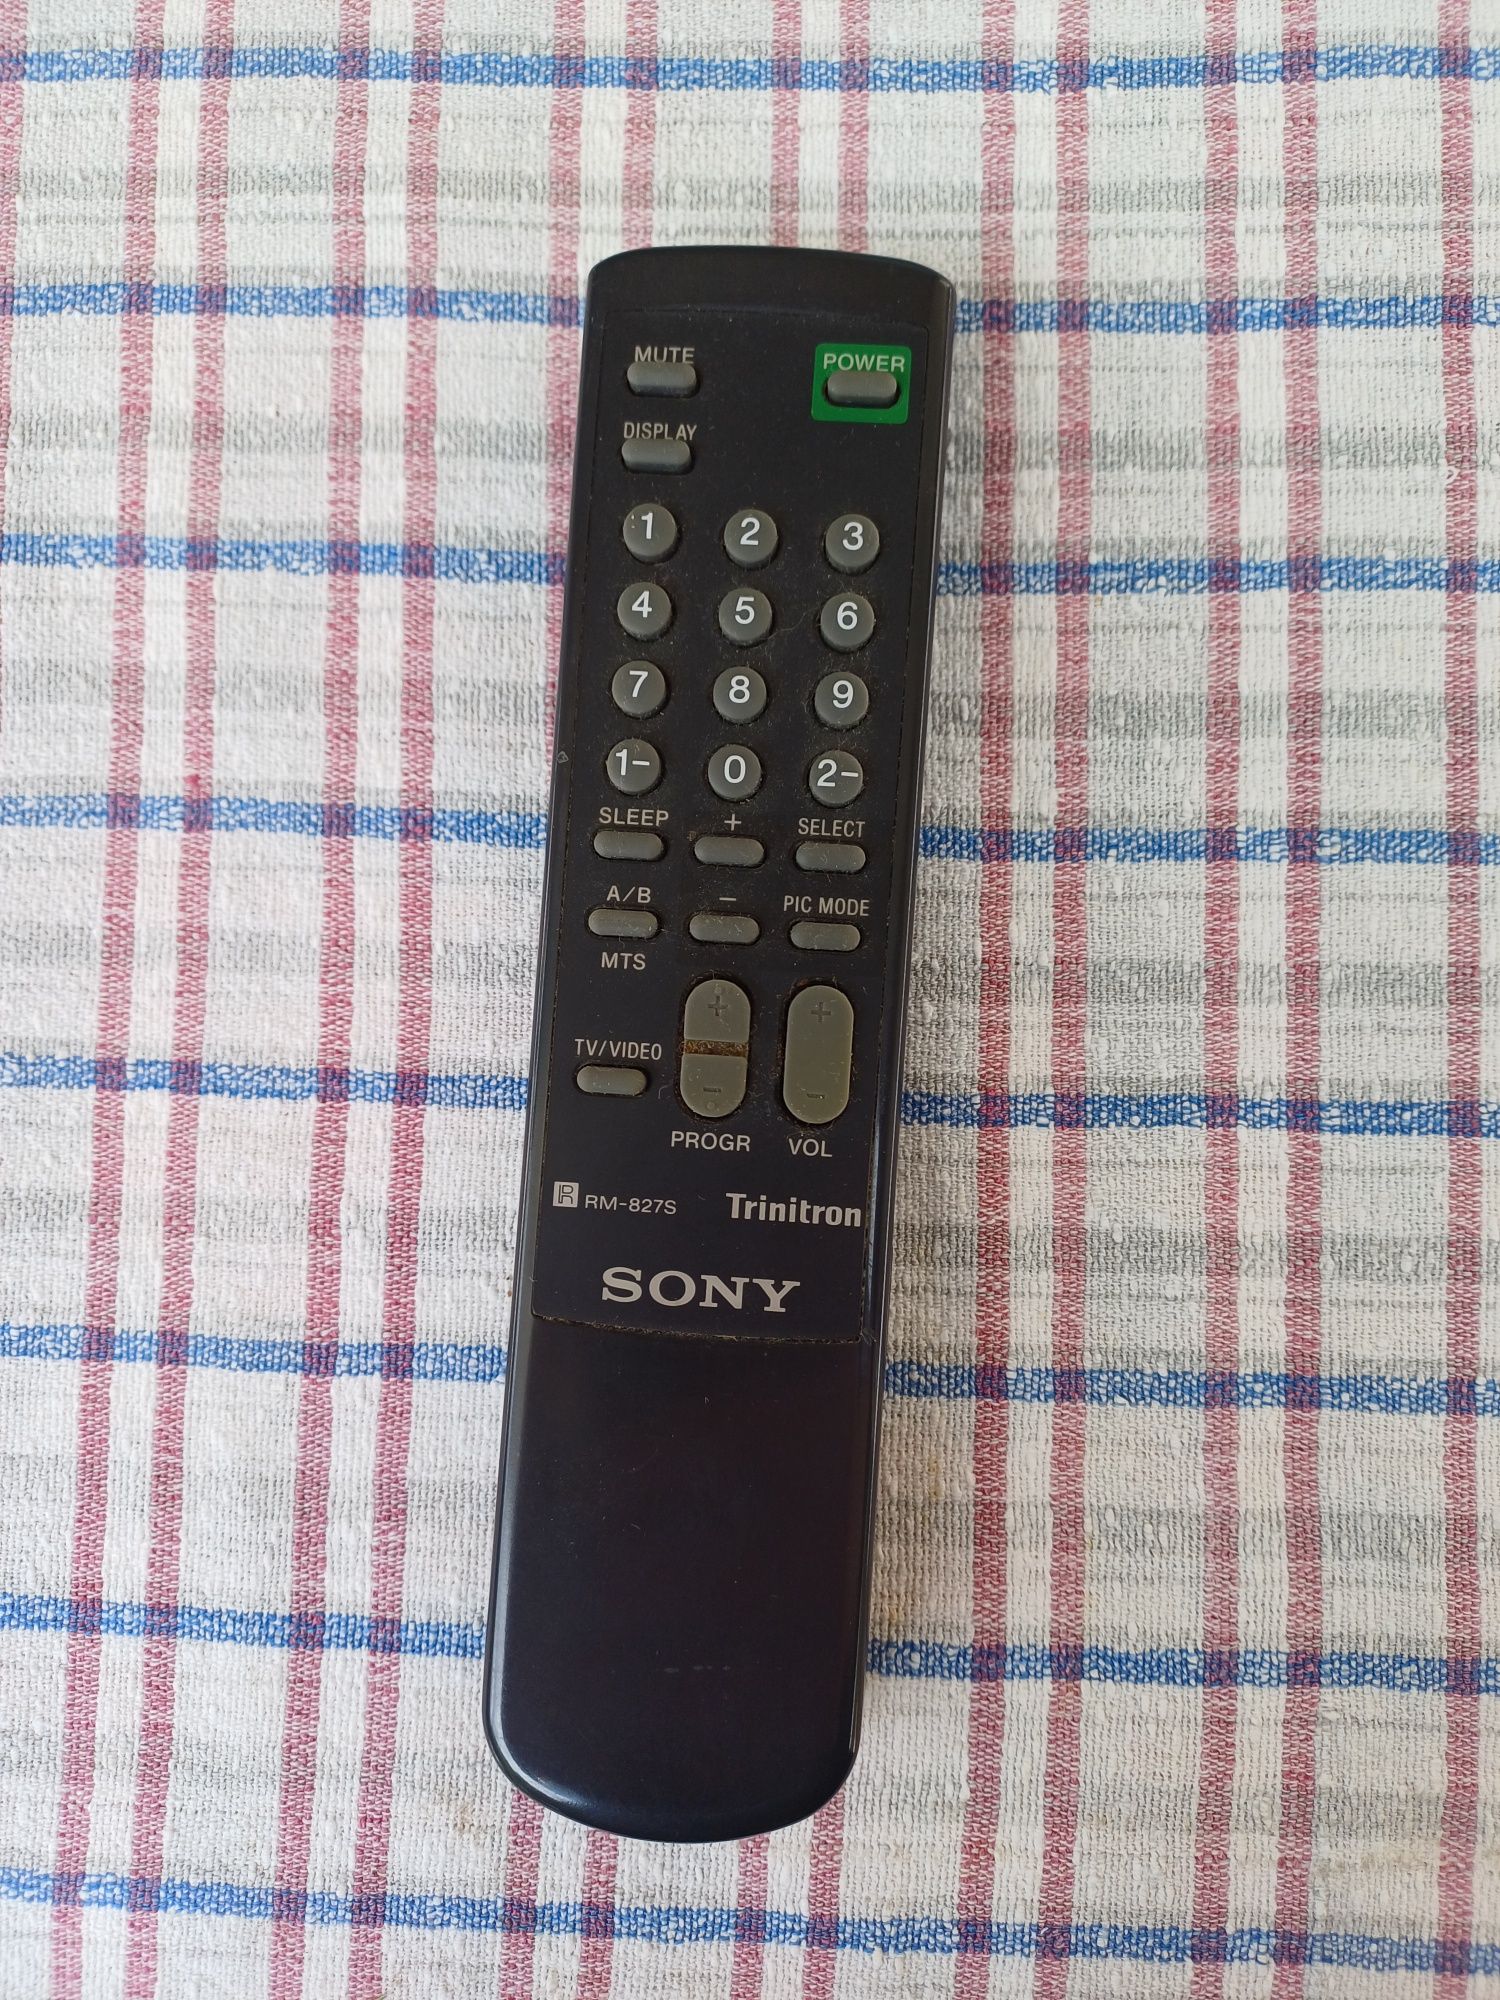 Телевозор 21" - Sony Trinitron KV-2185MT

-Телевизорът е много запазен